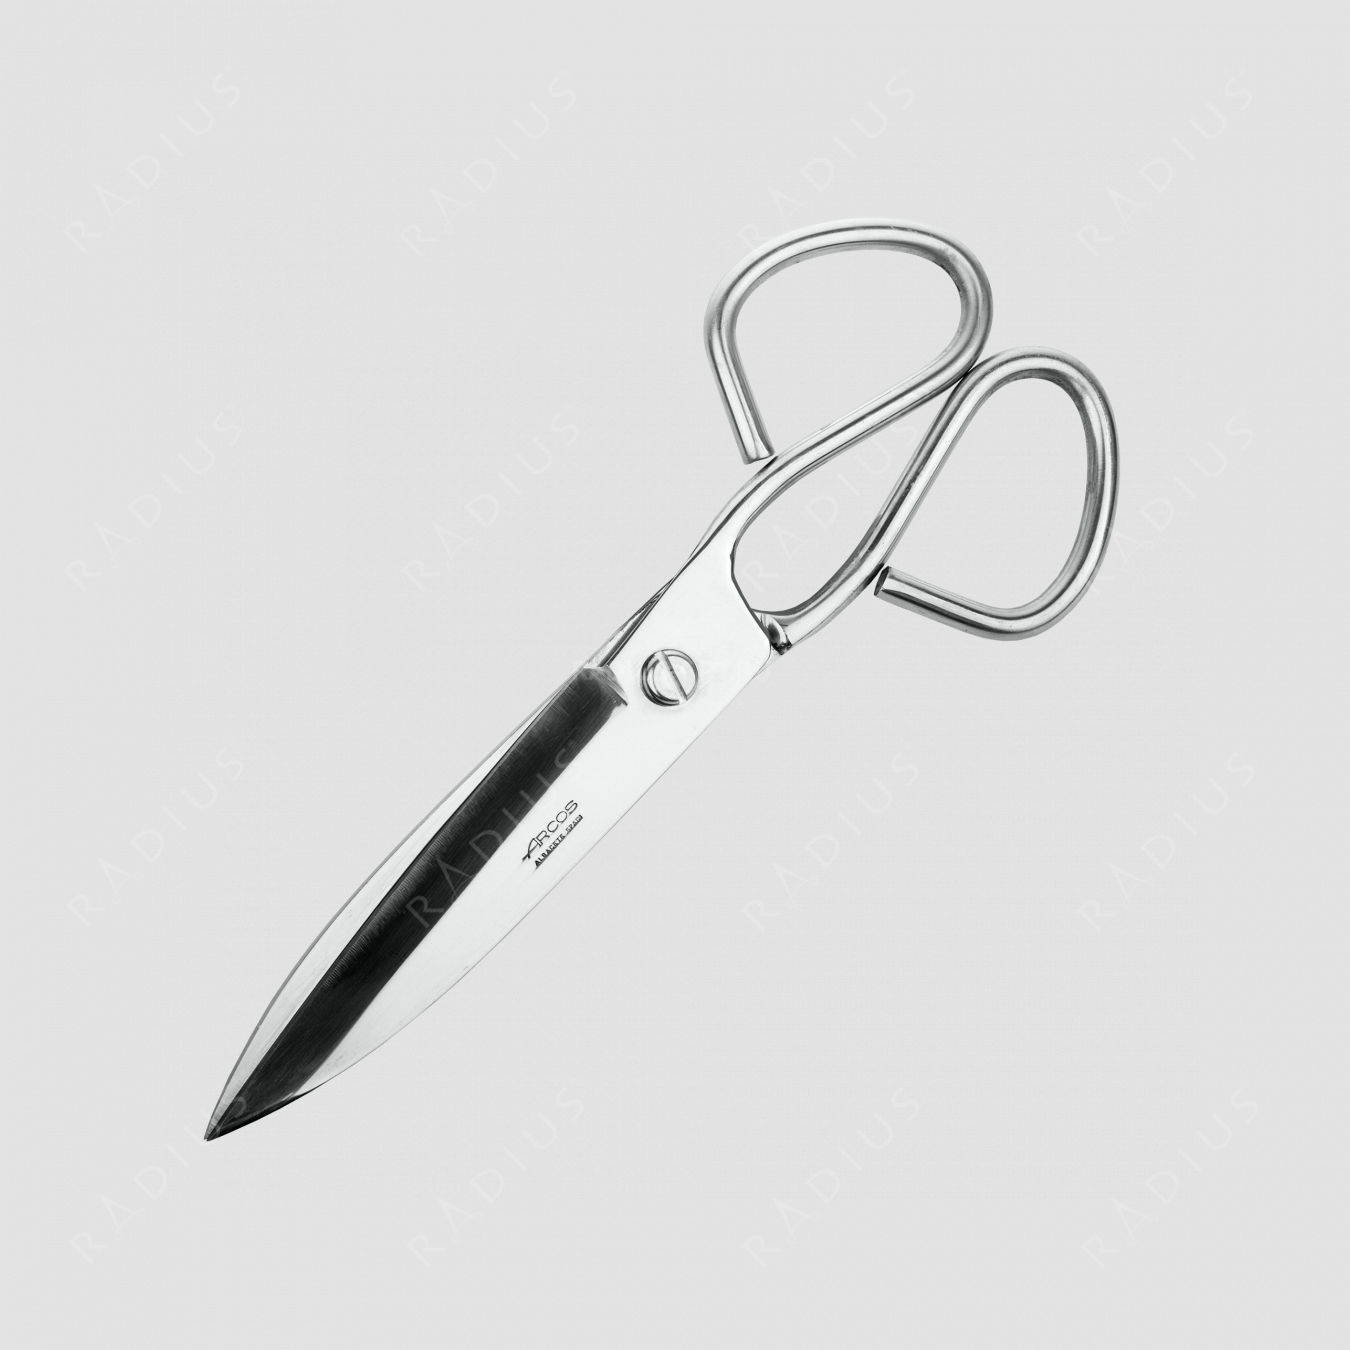 Ножницы кухонные 24 см, серия Scissors, ARCOS, Испания